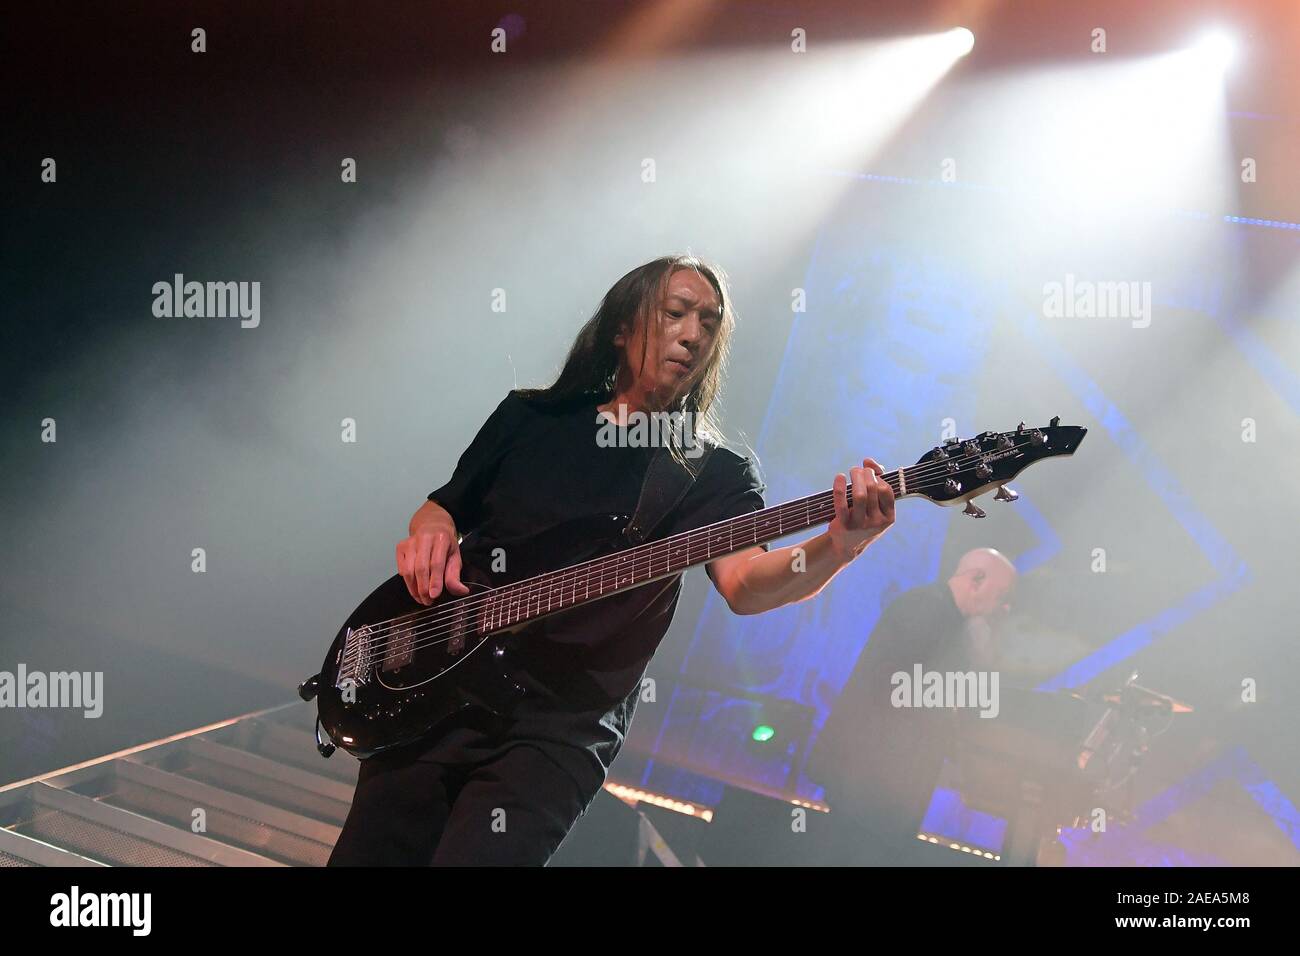 Río de Janeiro, Brasil, 6 de diciembre de 2019. El bajista John Myung del grupo de metal progresivo Dream Theater durante un concierto en Río de Janeiro. Foto de stock